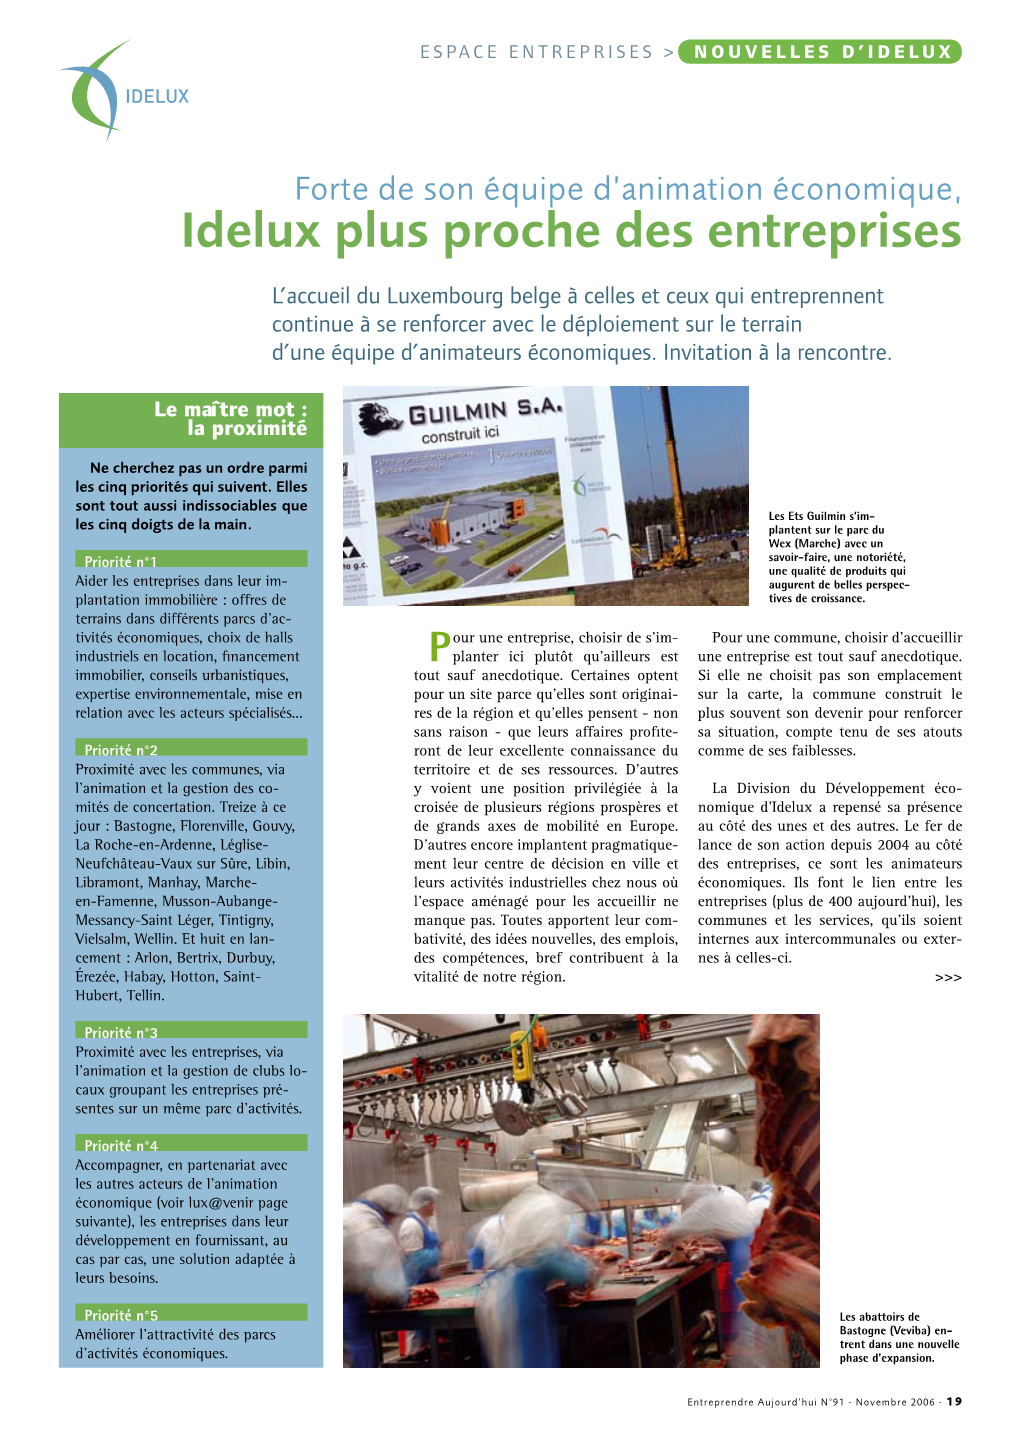 Idelux Plus Proche Des Entreprises